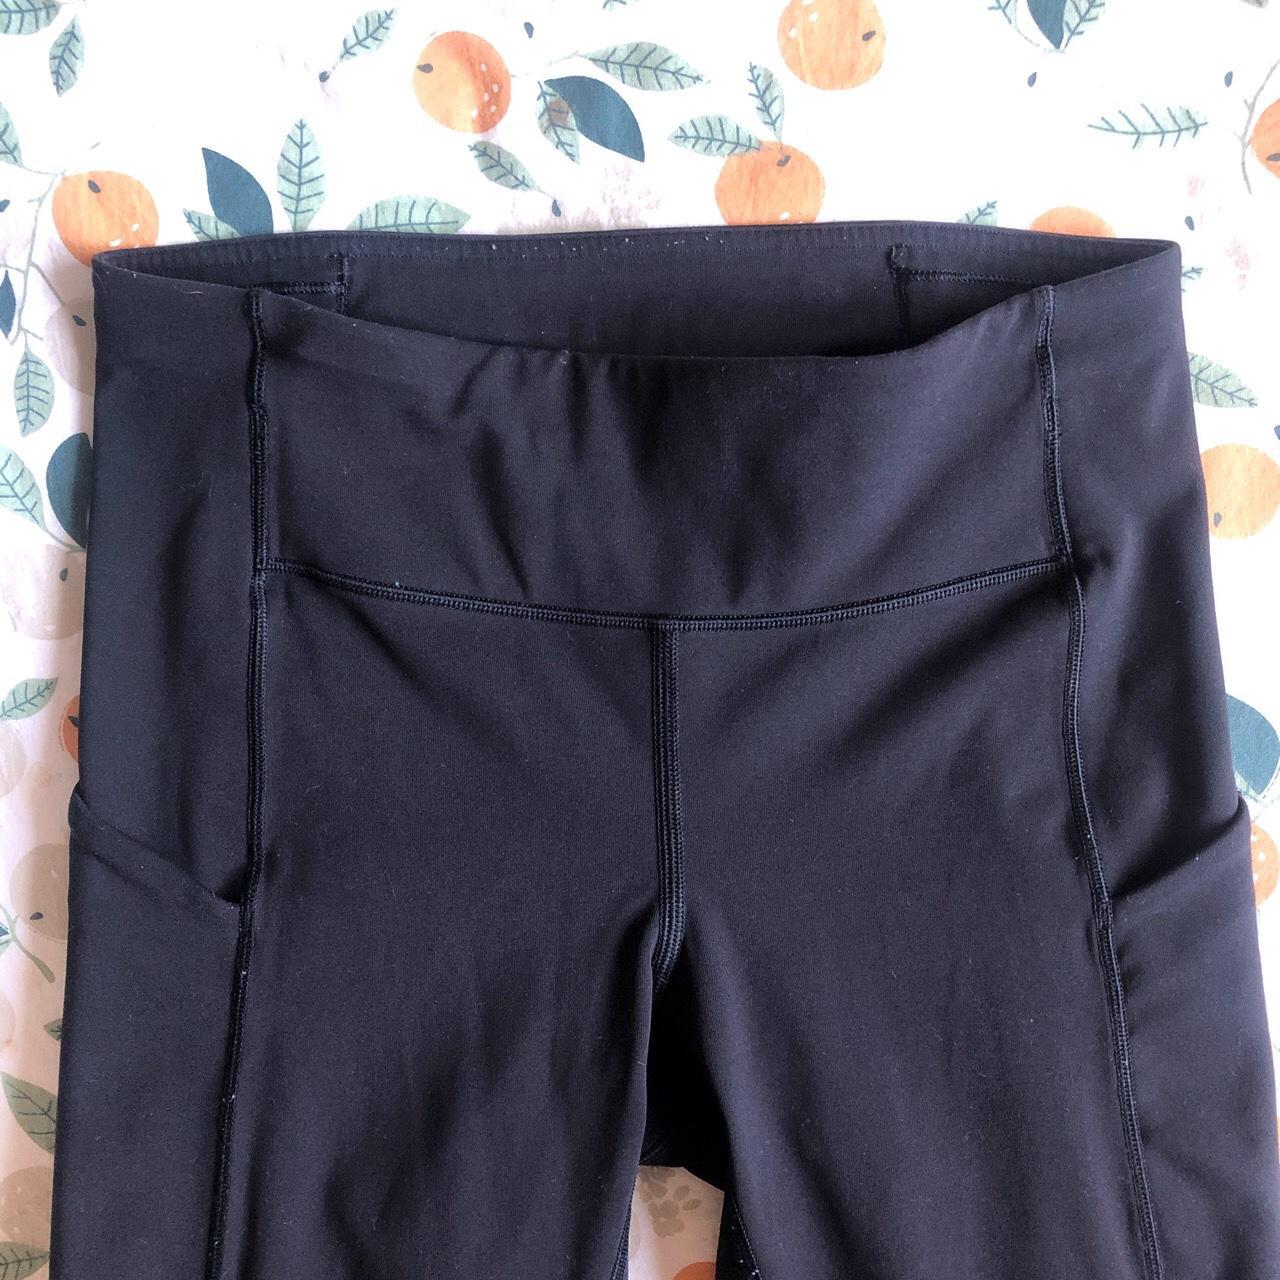 Lululemon black leggings (with pockets✨), size 4, - Depop